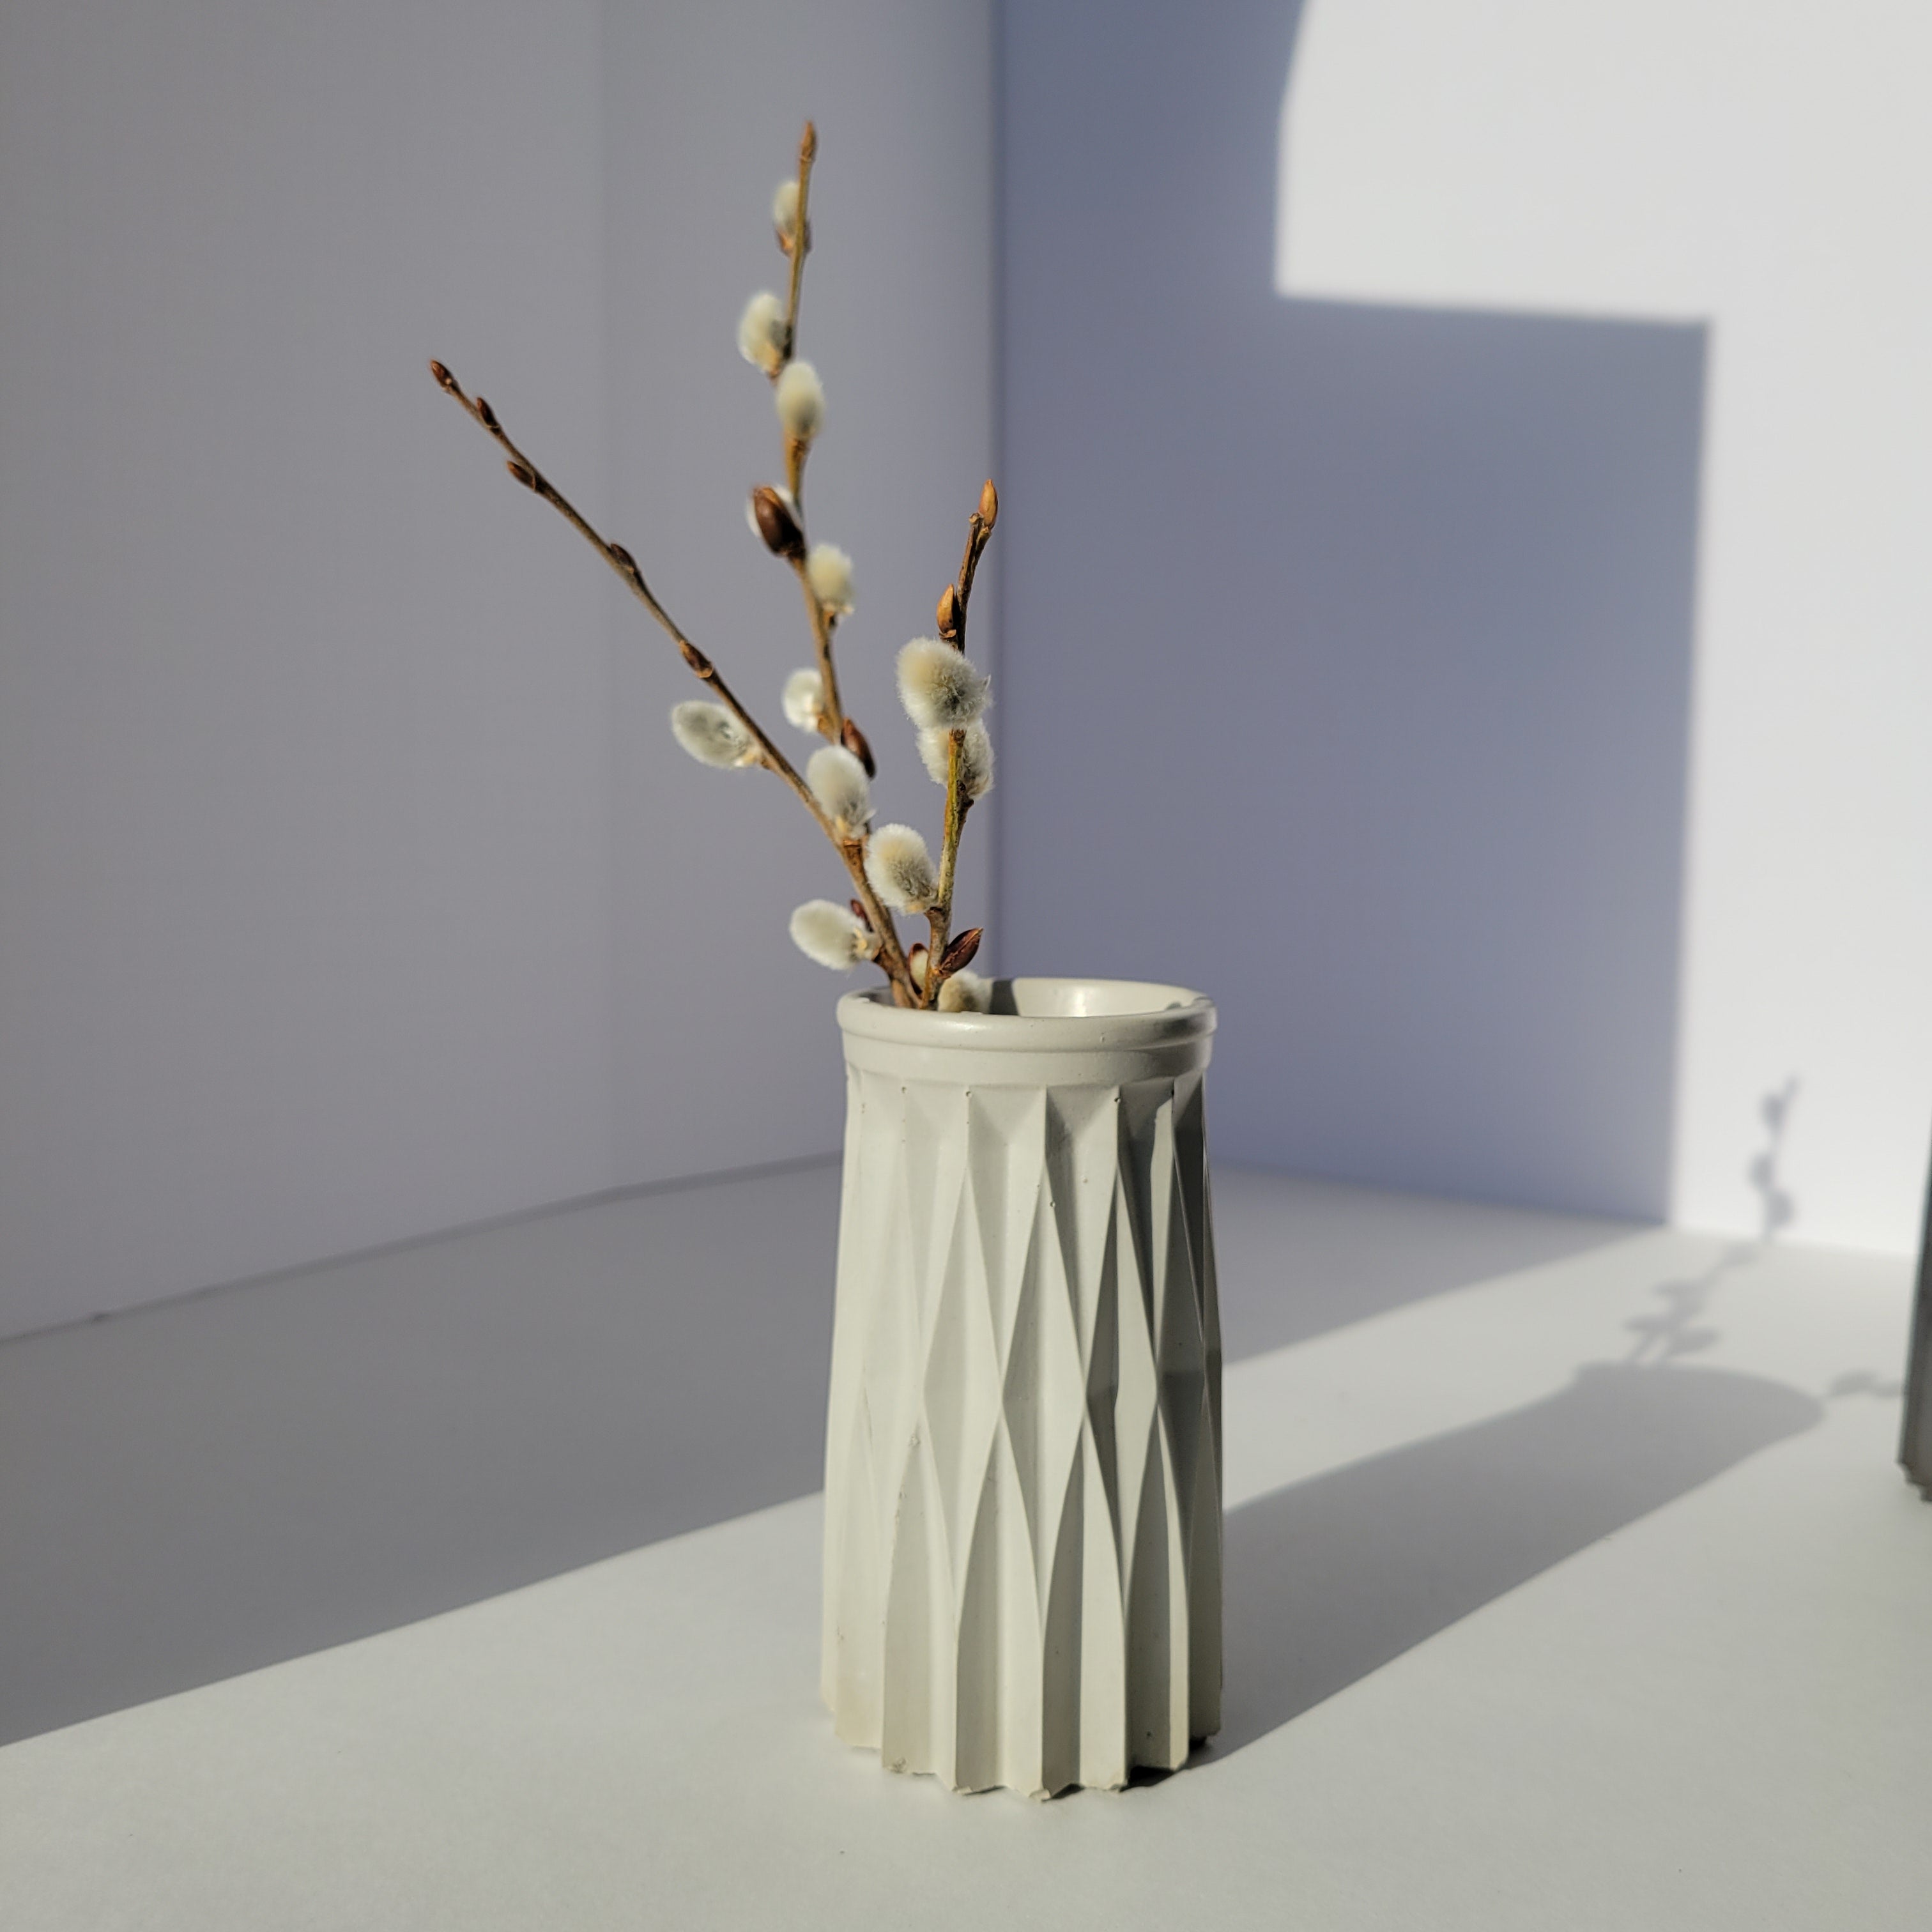 Object #14 - Bud Vase